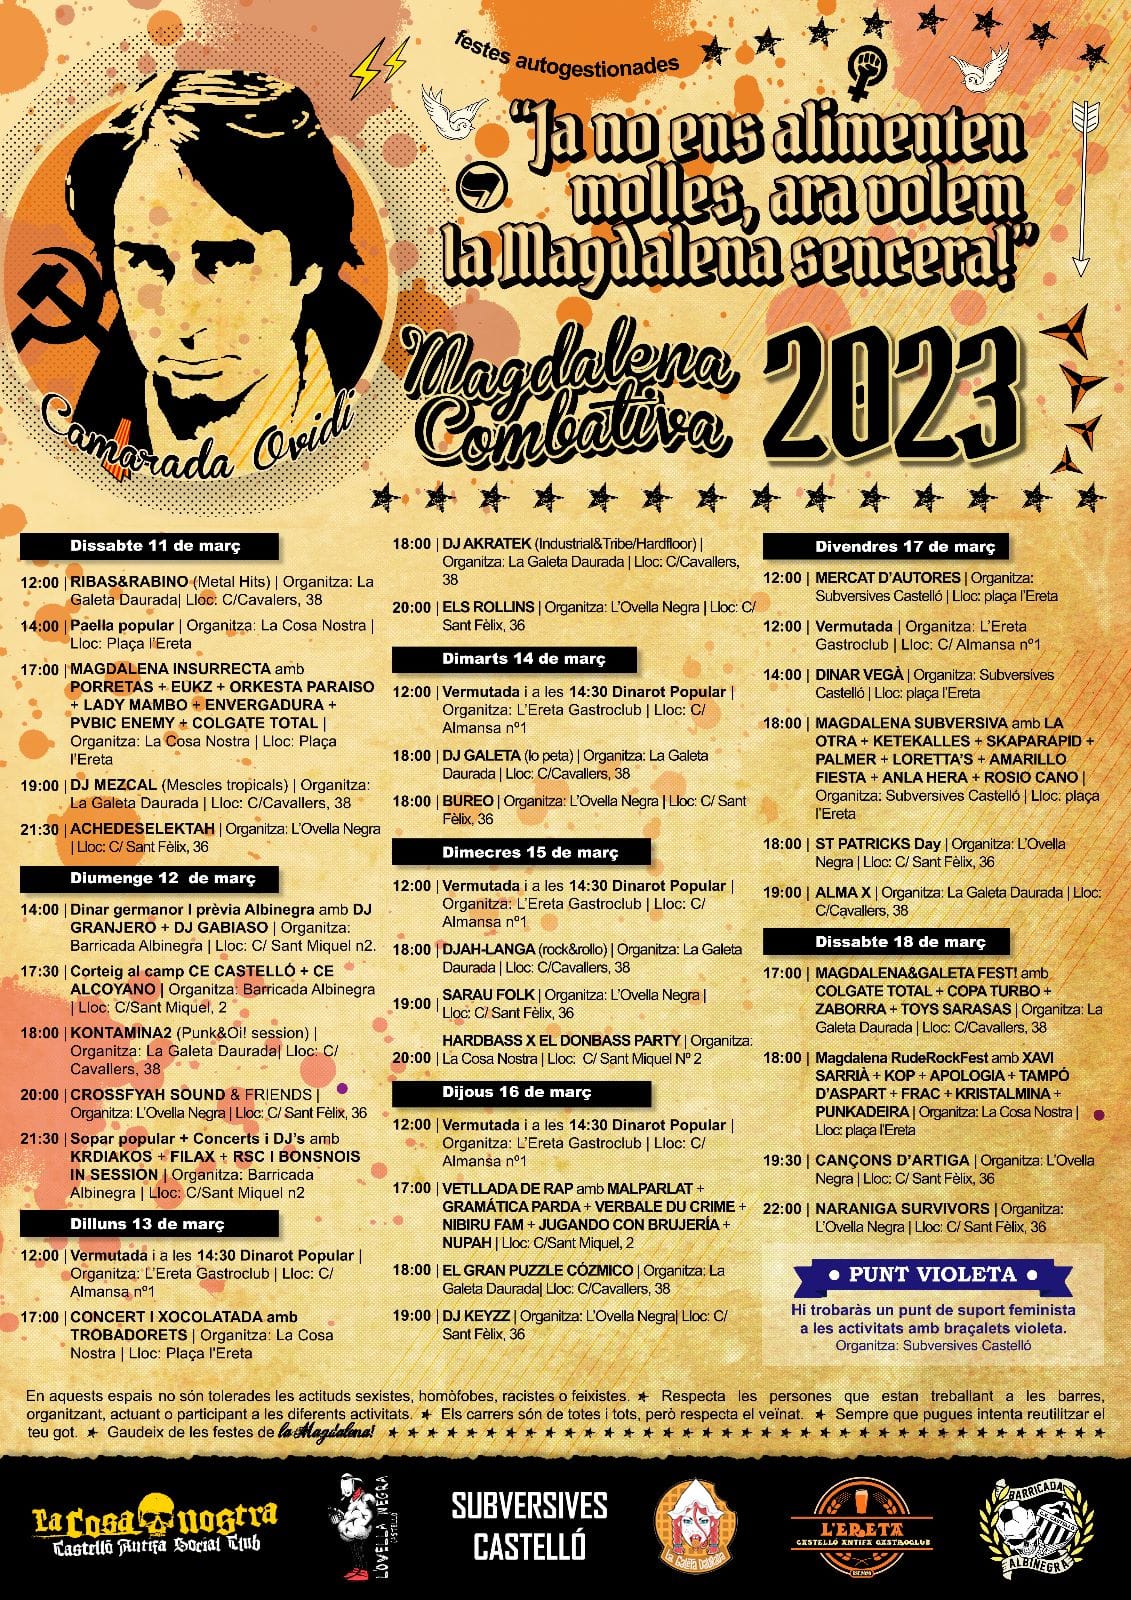 magdalena insurrecta 2023 cartel todos los eventos